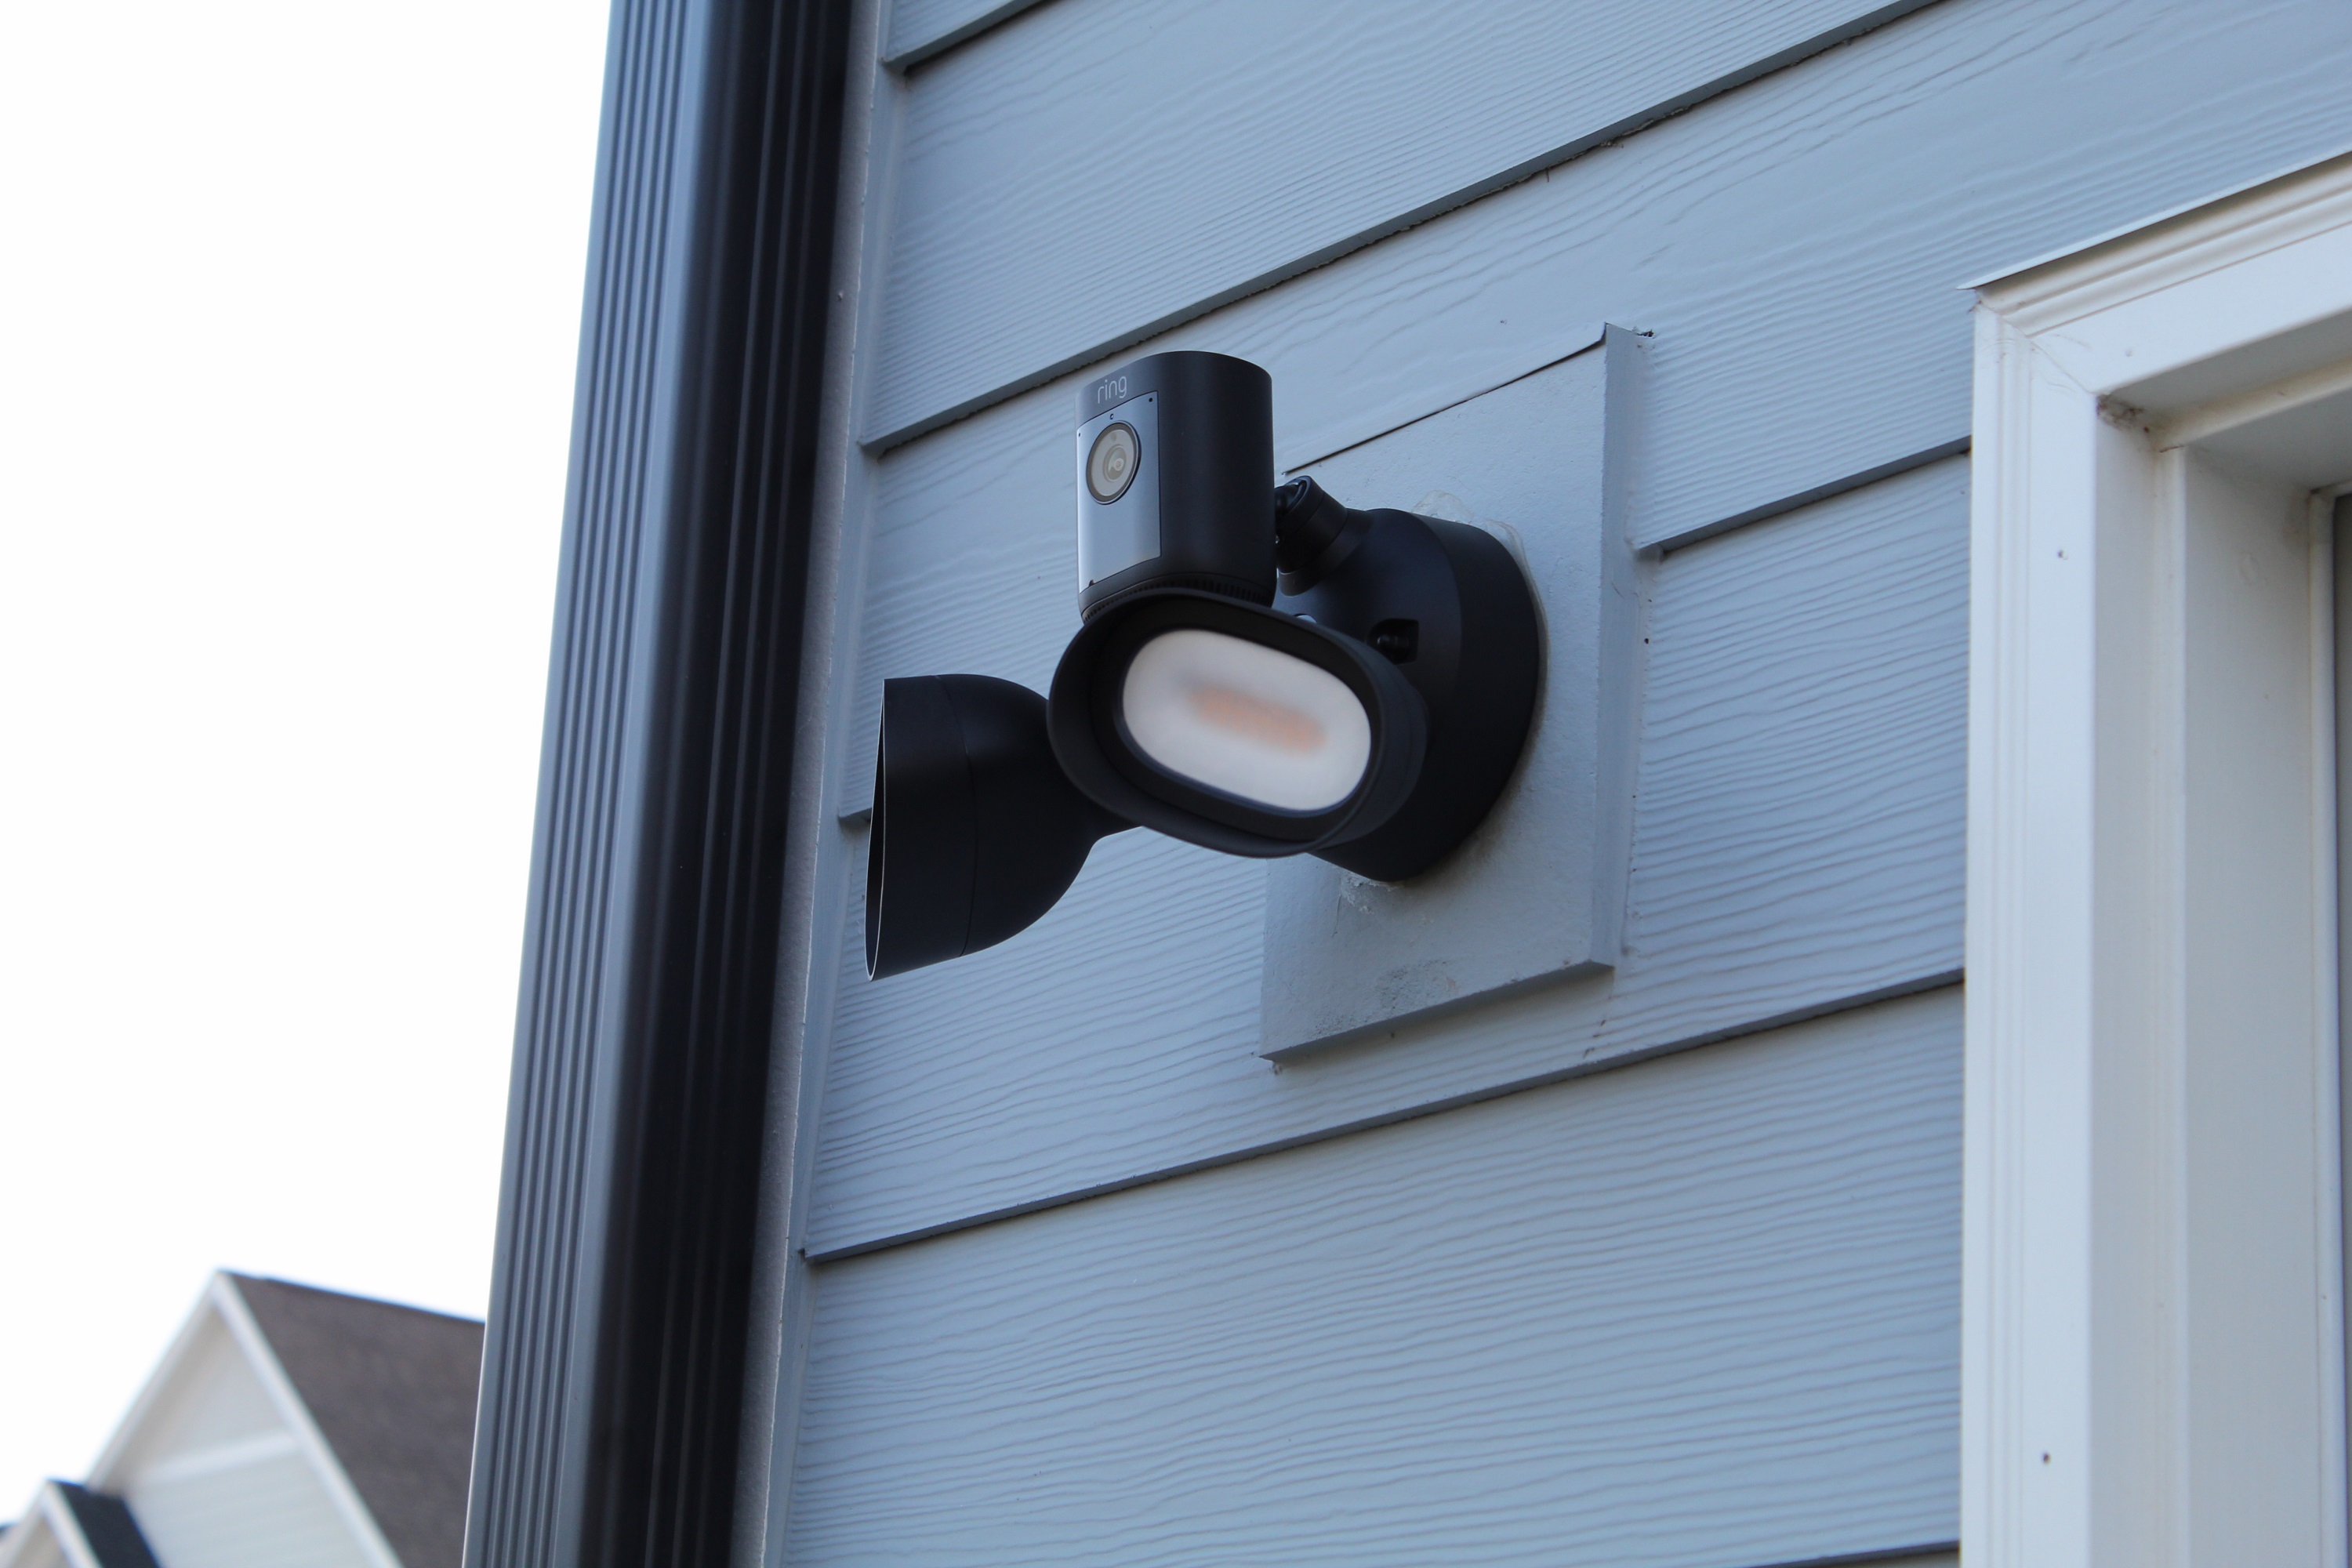 Ring Floodlight Cam Pro instalada en el exterior de una casa.